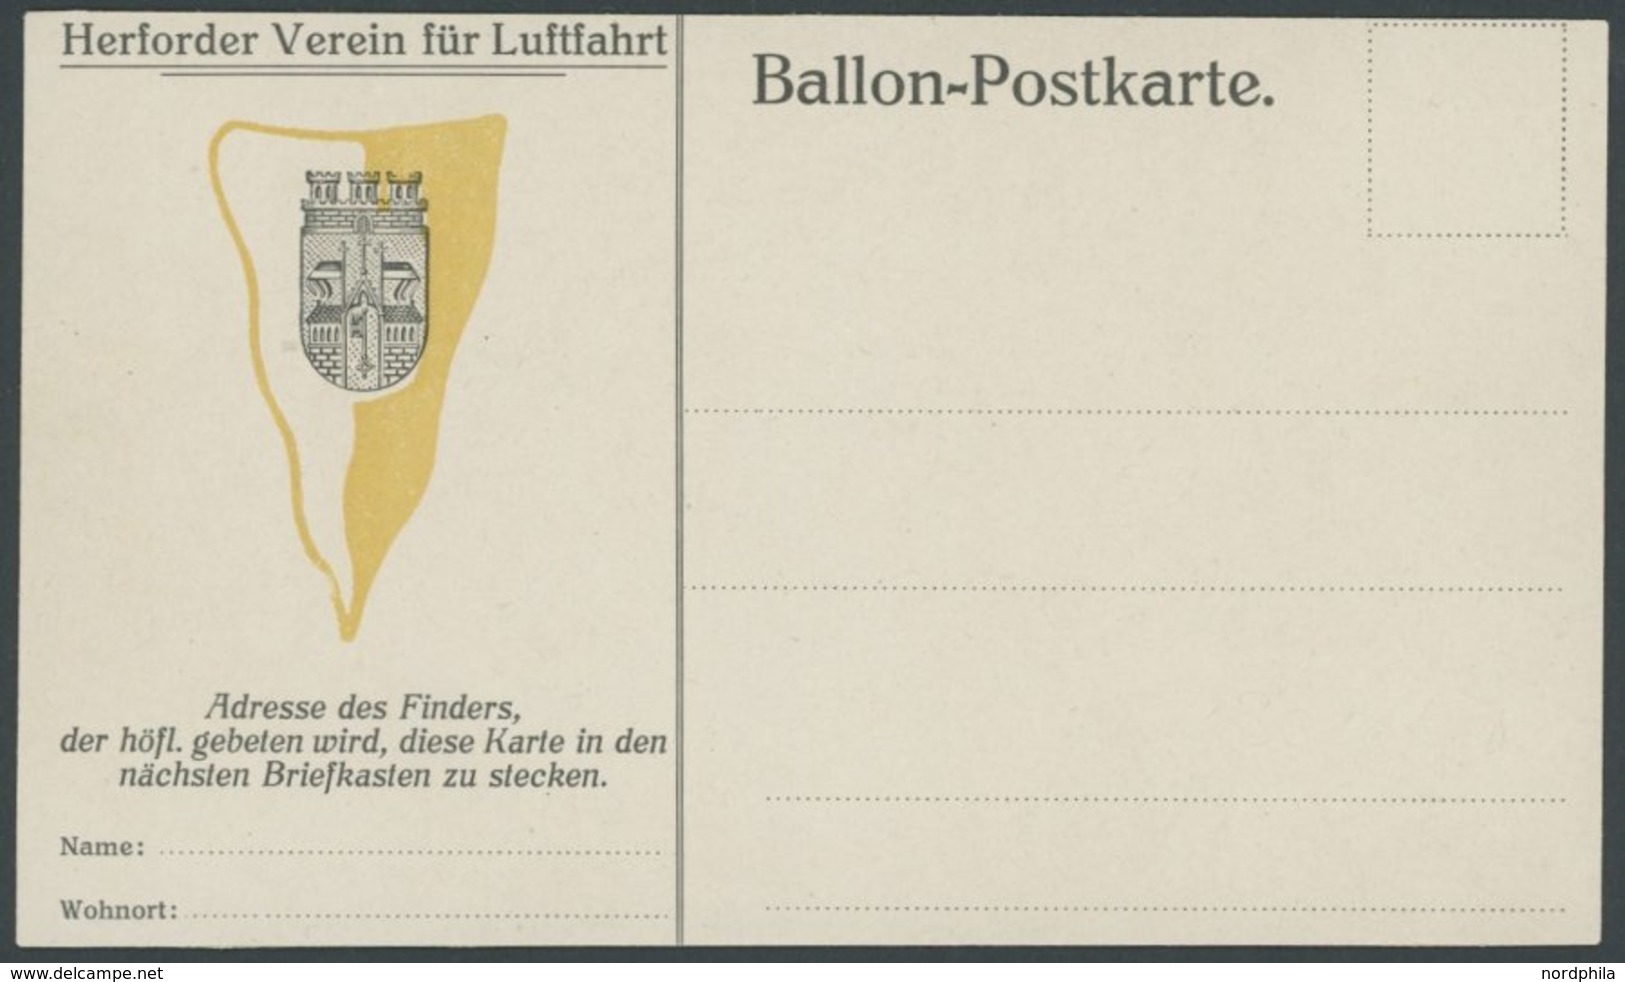 BALLON-FAHRTEN 1897-1916 1911/2, HERFORDER VEREIN FÜR LUFTFAHRT, Ungebrauchte Ballon-Finderkarte, Karte Oben Waagerecht  - Montgolfières